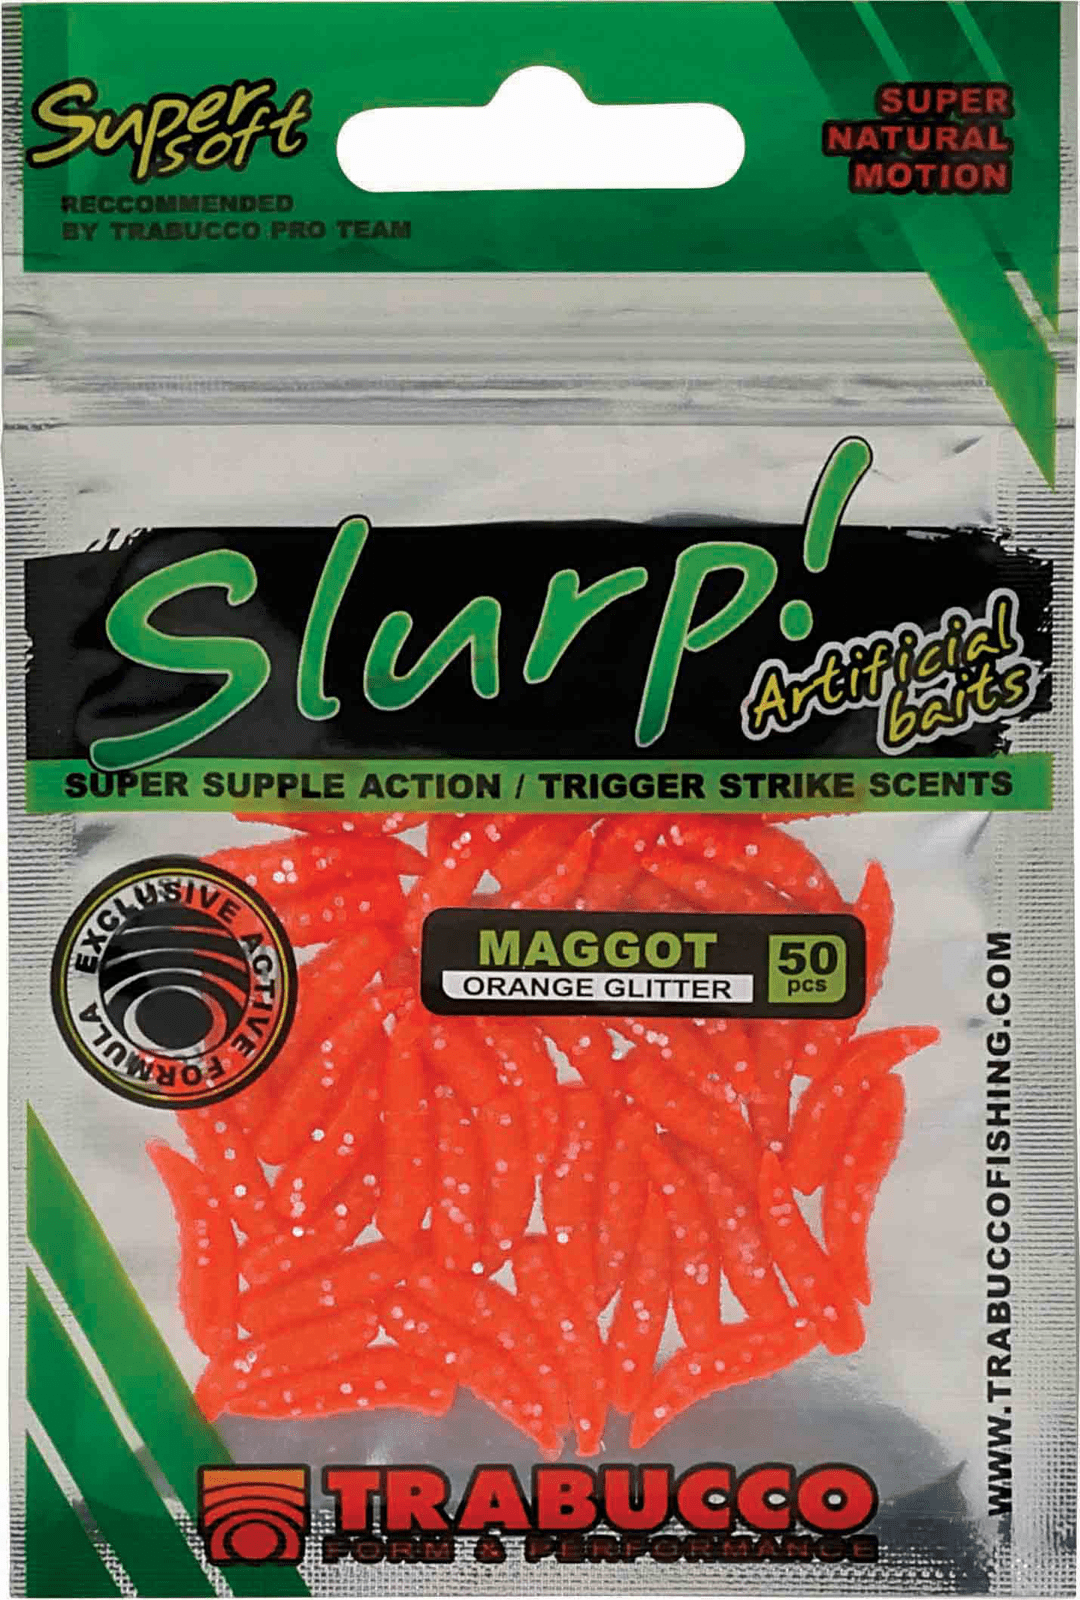 Trabucco slurp bait maggot orange glitter